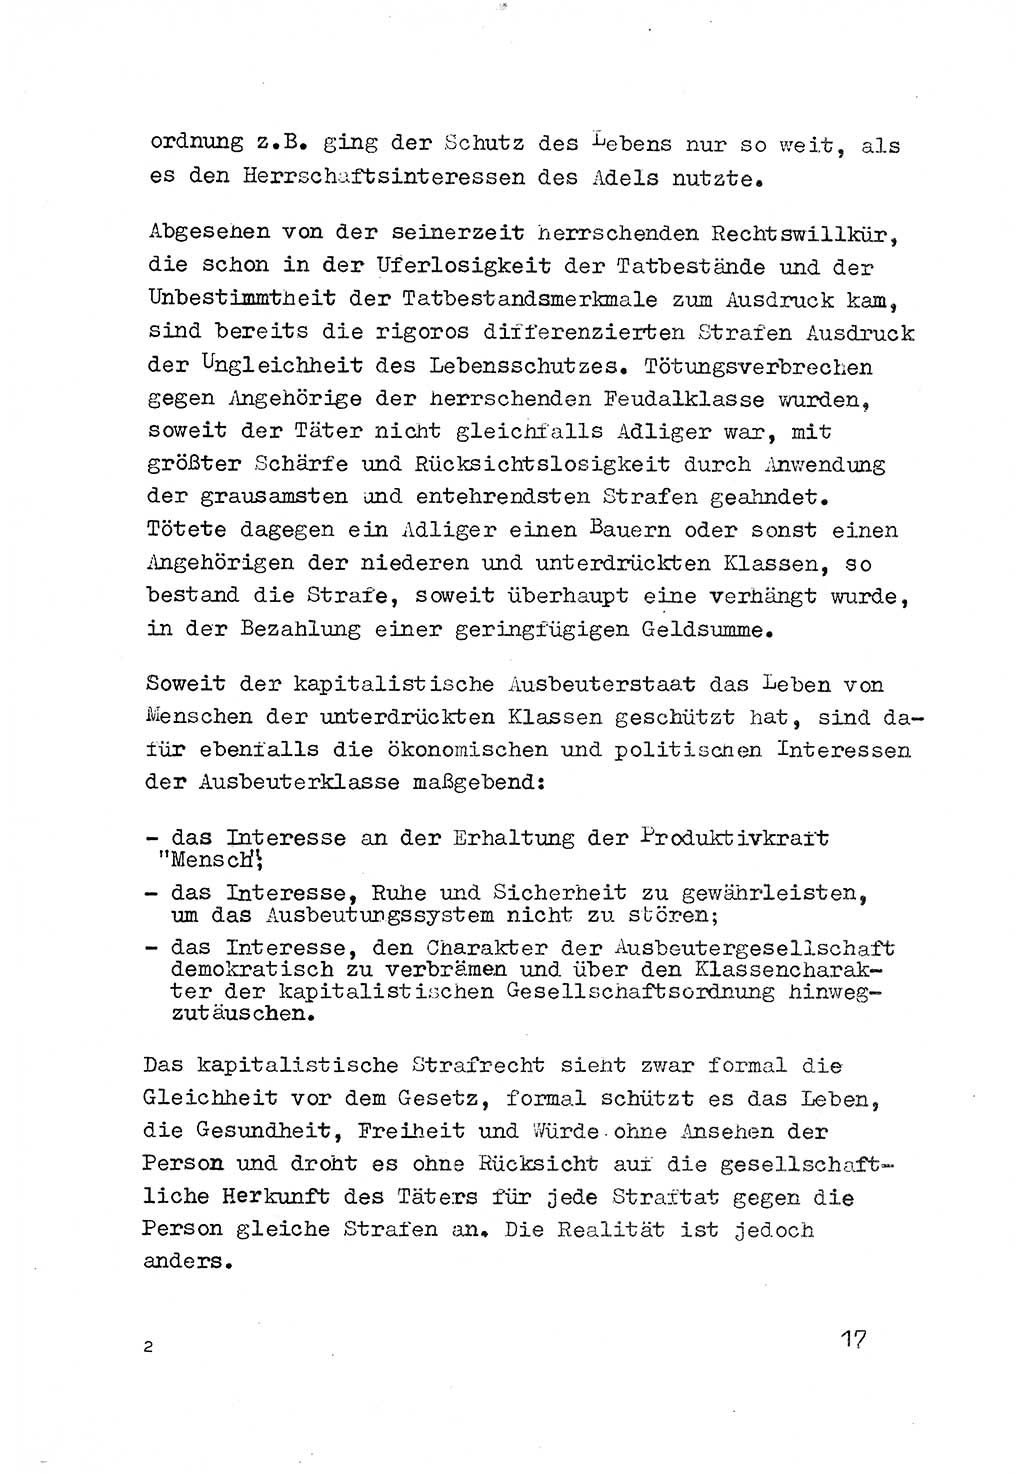 Strafrecht der DDR (Deutsche Demokratische Republik), Besonderer Teil, Lehrmaterial, Heft 3 1969, Seite 17 (Strafr. DDR BT Lehrmat. H. 3 1969, S. 17)